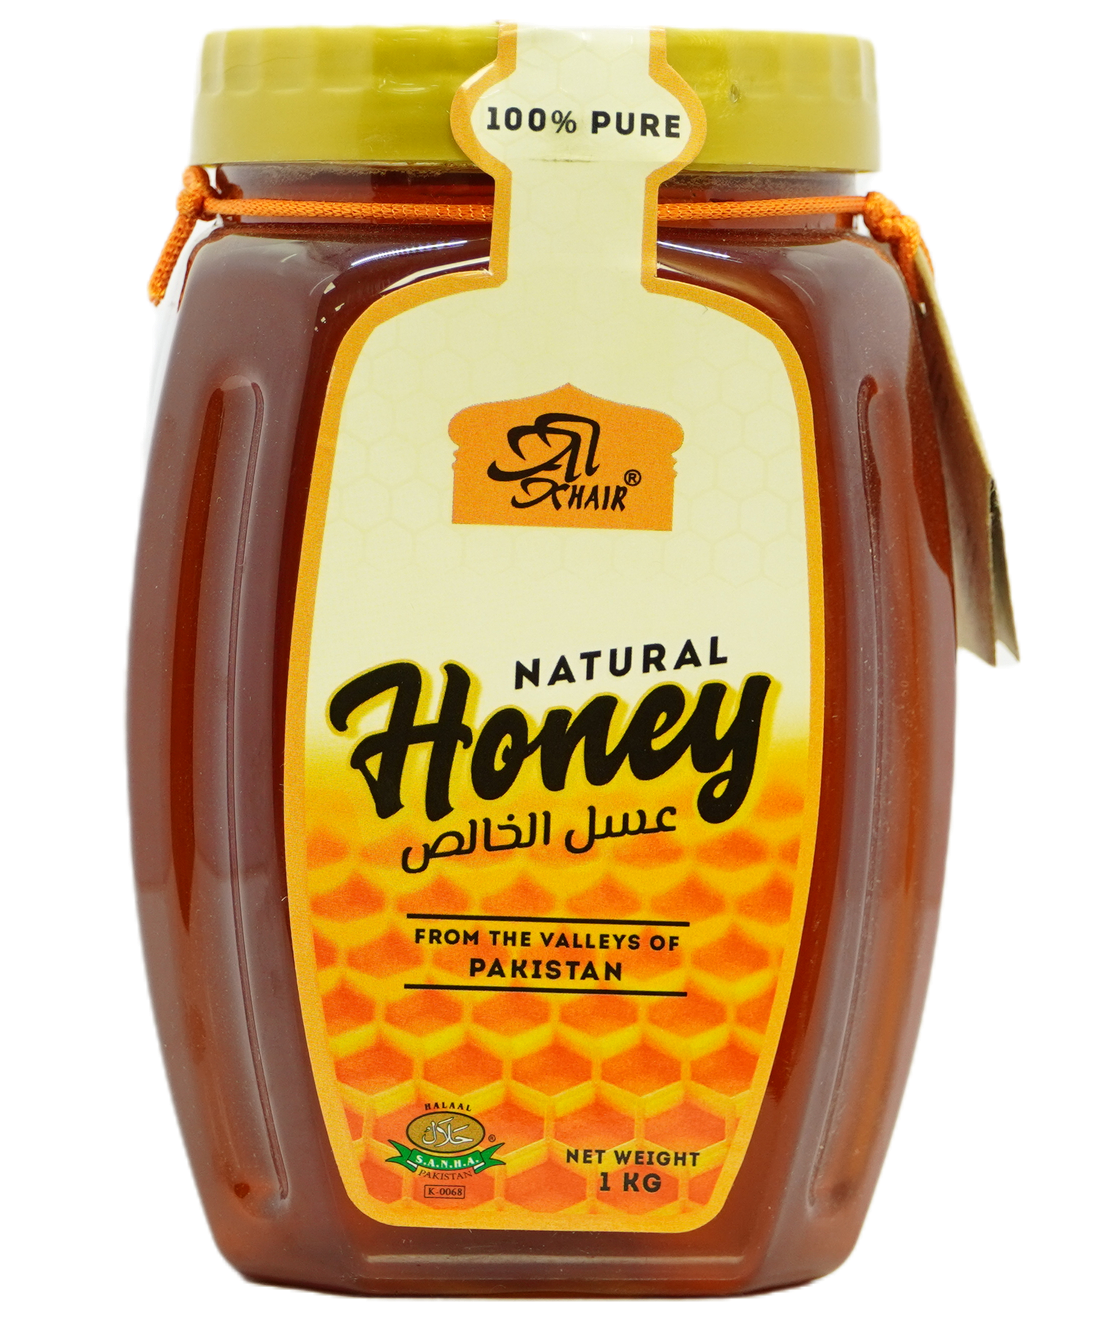 Buy 100% Original Honey Natural 1 KG from Darussalam in Pakistan